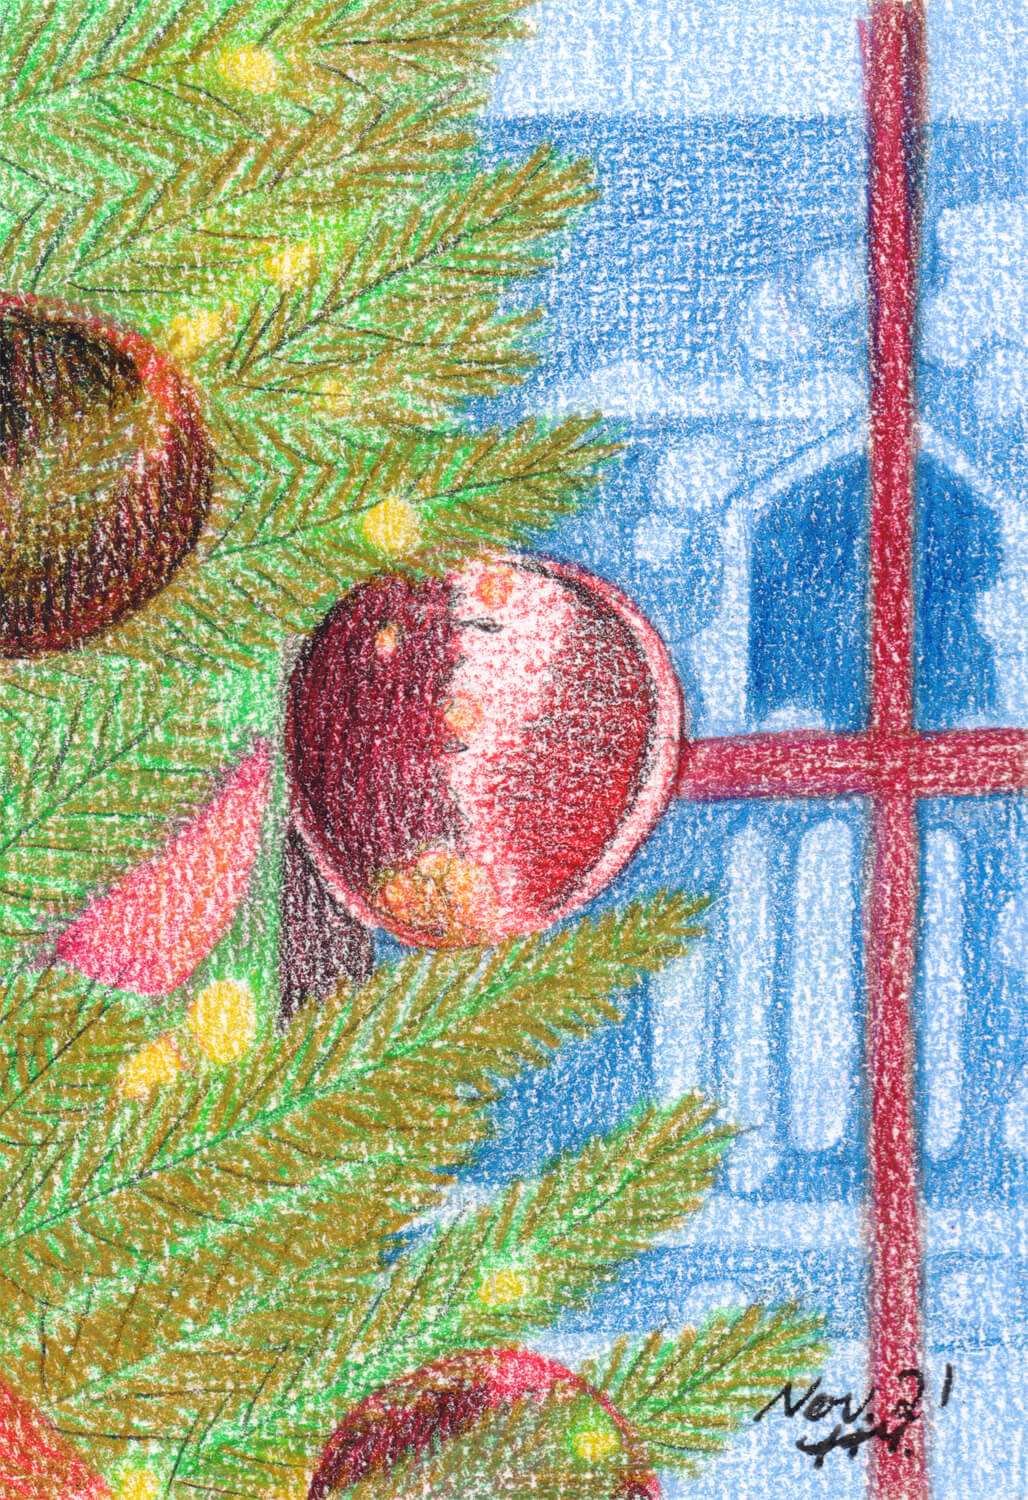 Advent Weihnachtsbaum am Fenster fertige Buntstiftzeichnung